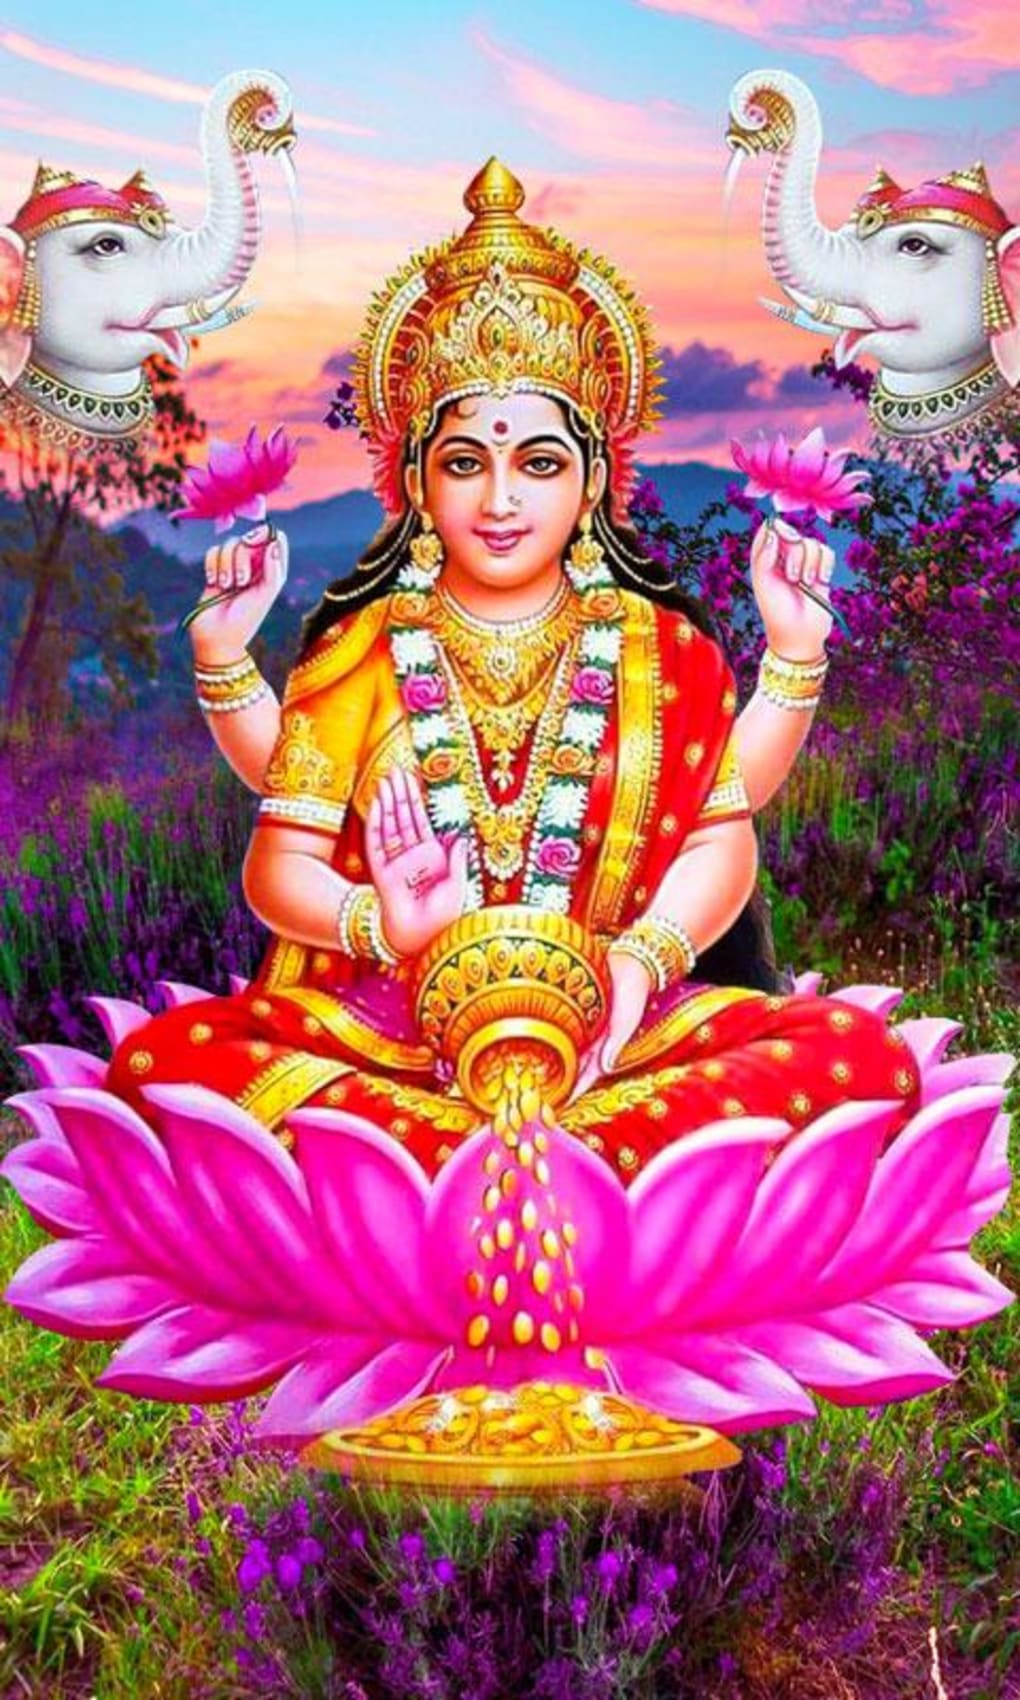 Shree lakshmi high quality wallpaper for your mobile. Download shree lakshmi  wallpaper fast and easy. | Saraswati photo, Saraswati goddess, Lakshmi  images